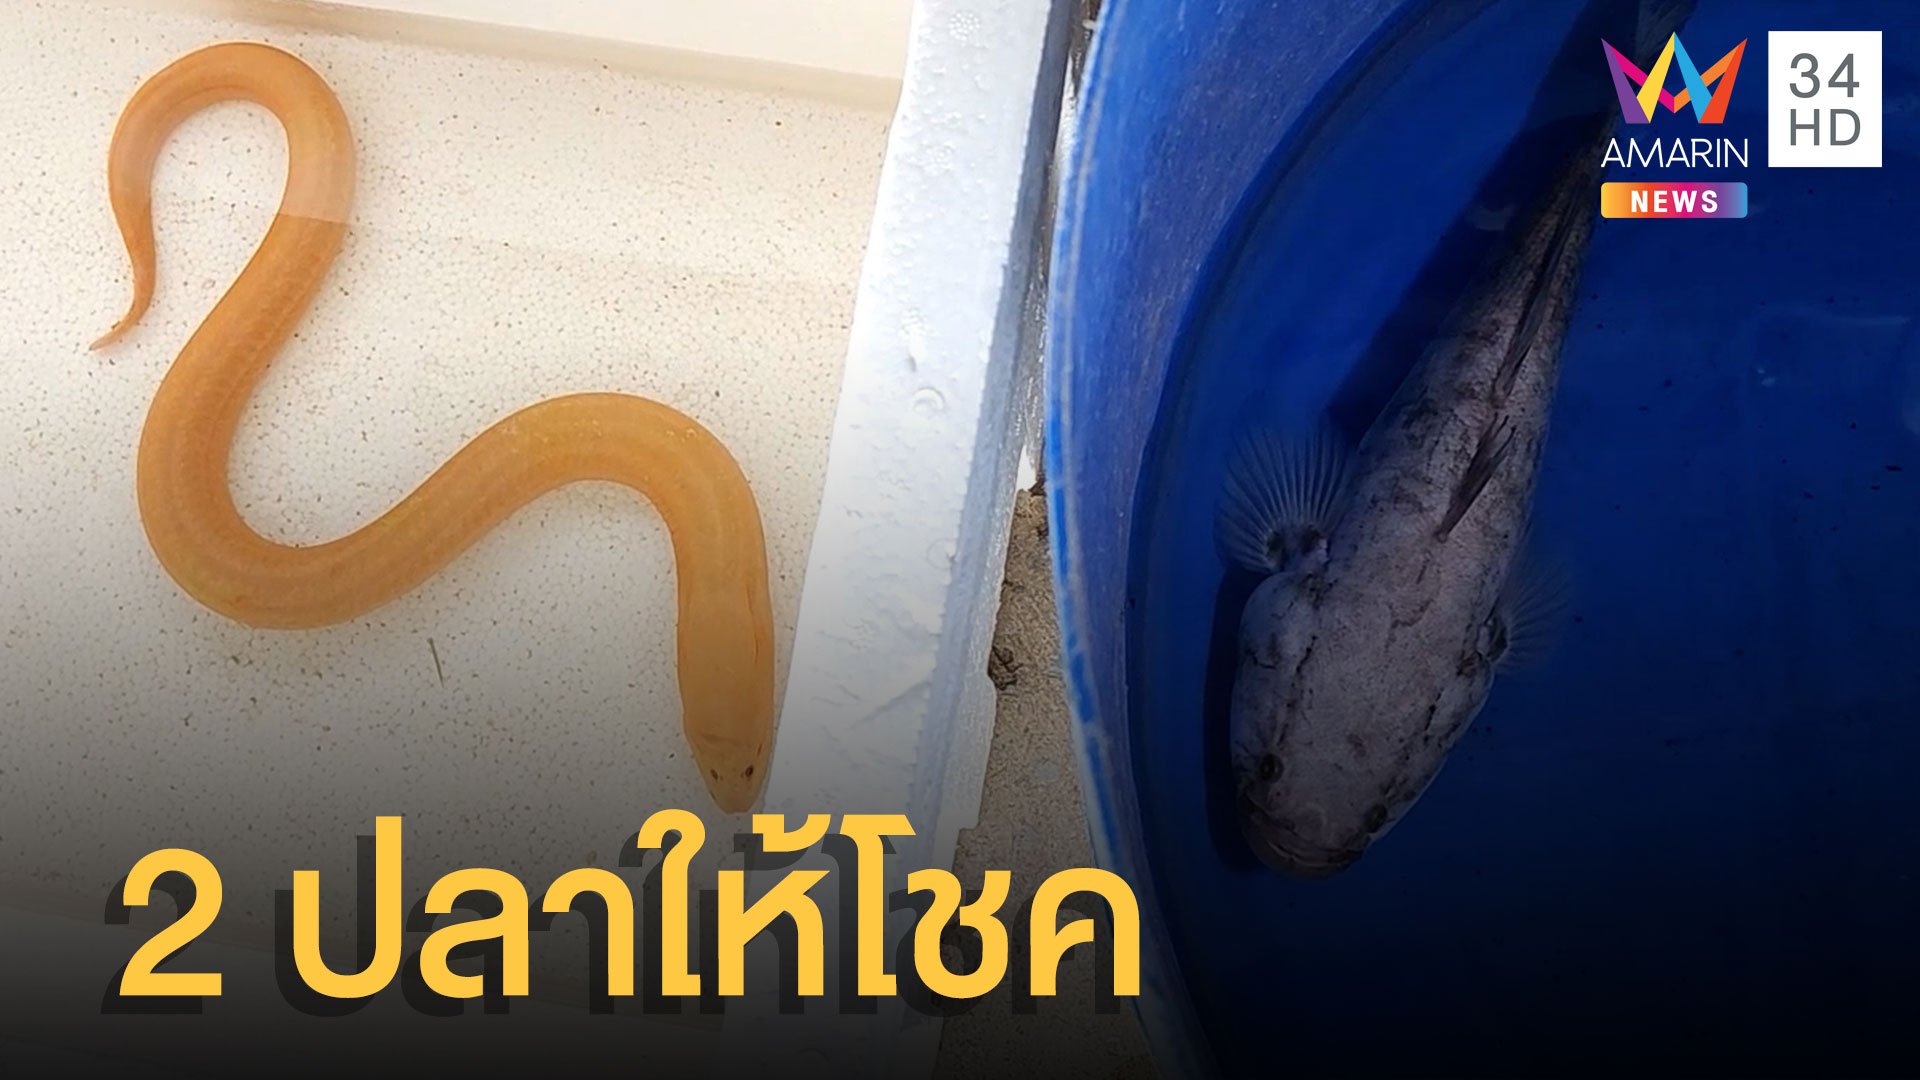 ฮือฮา ปลาบู่เงิน-ปลาไหลทอง ให้โชคหลายงวด | ข่าวอรุณอมรินทร์ | 15 ก.ค. 65 | AMARIN TVHD34